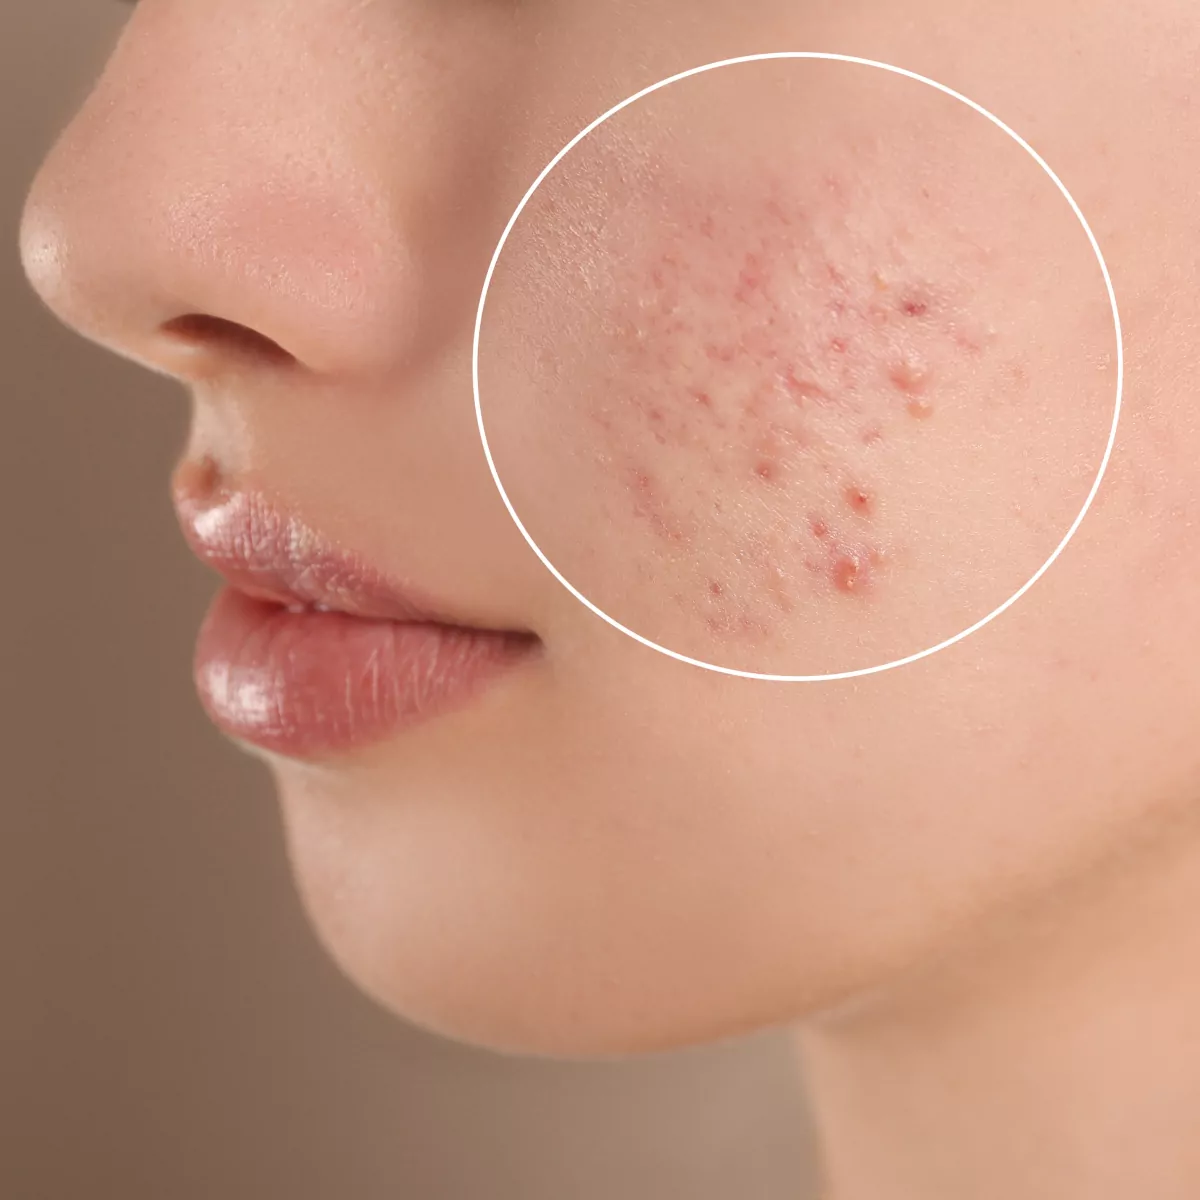 acne close up